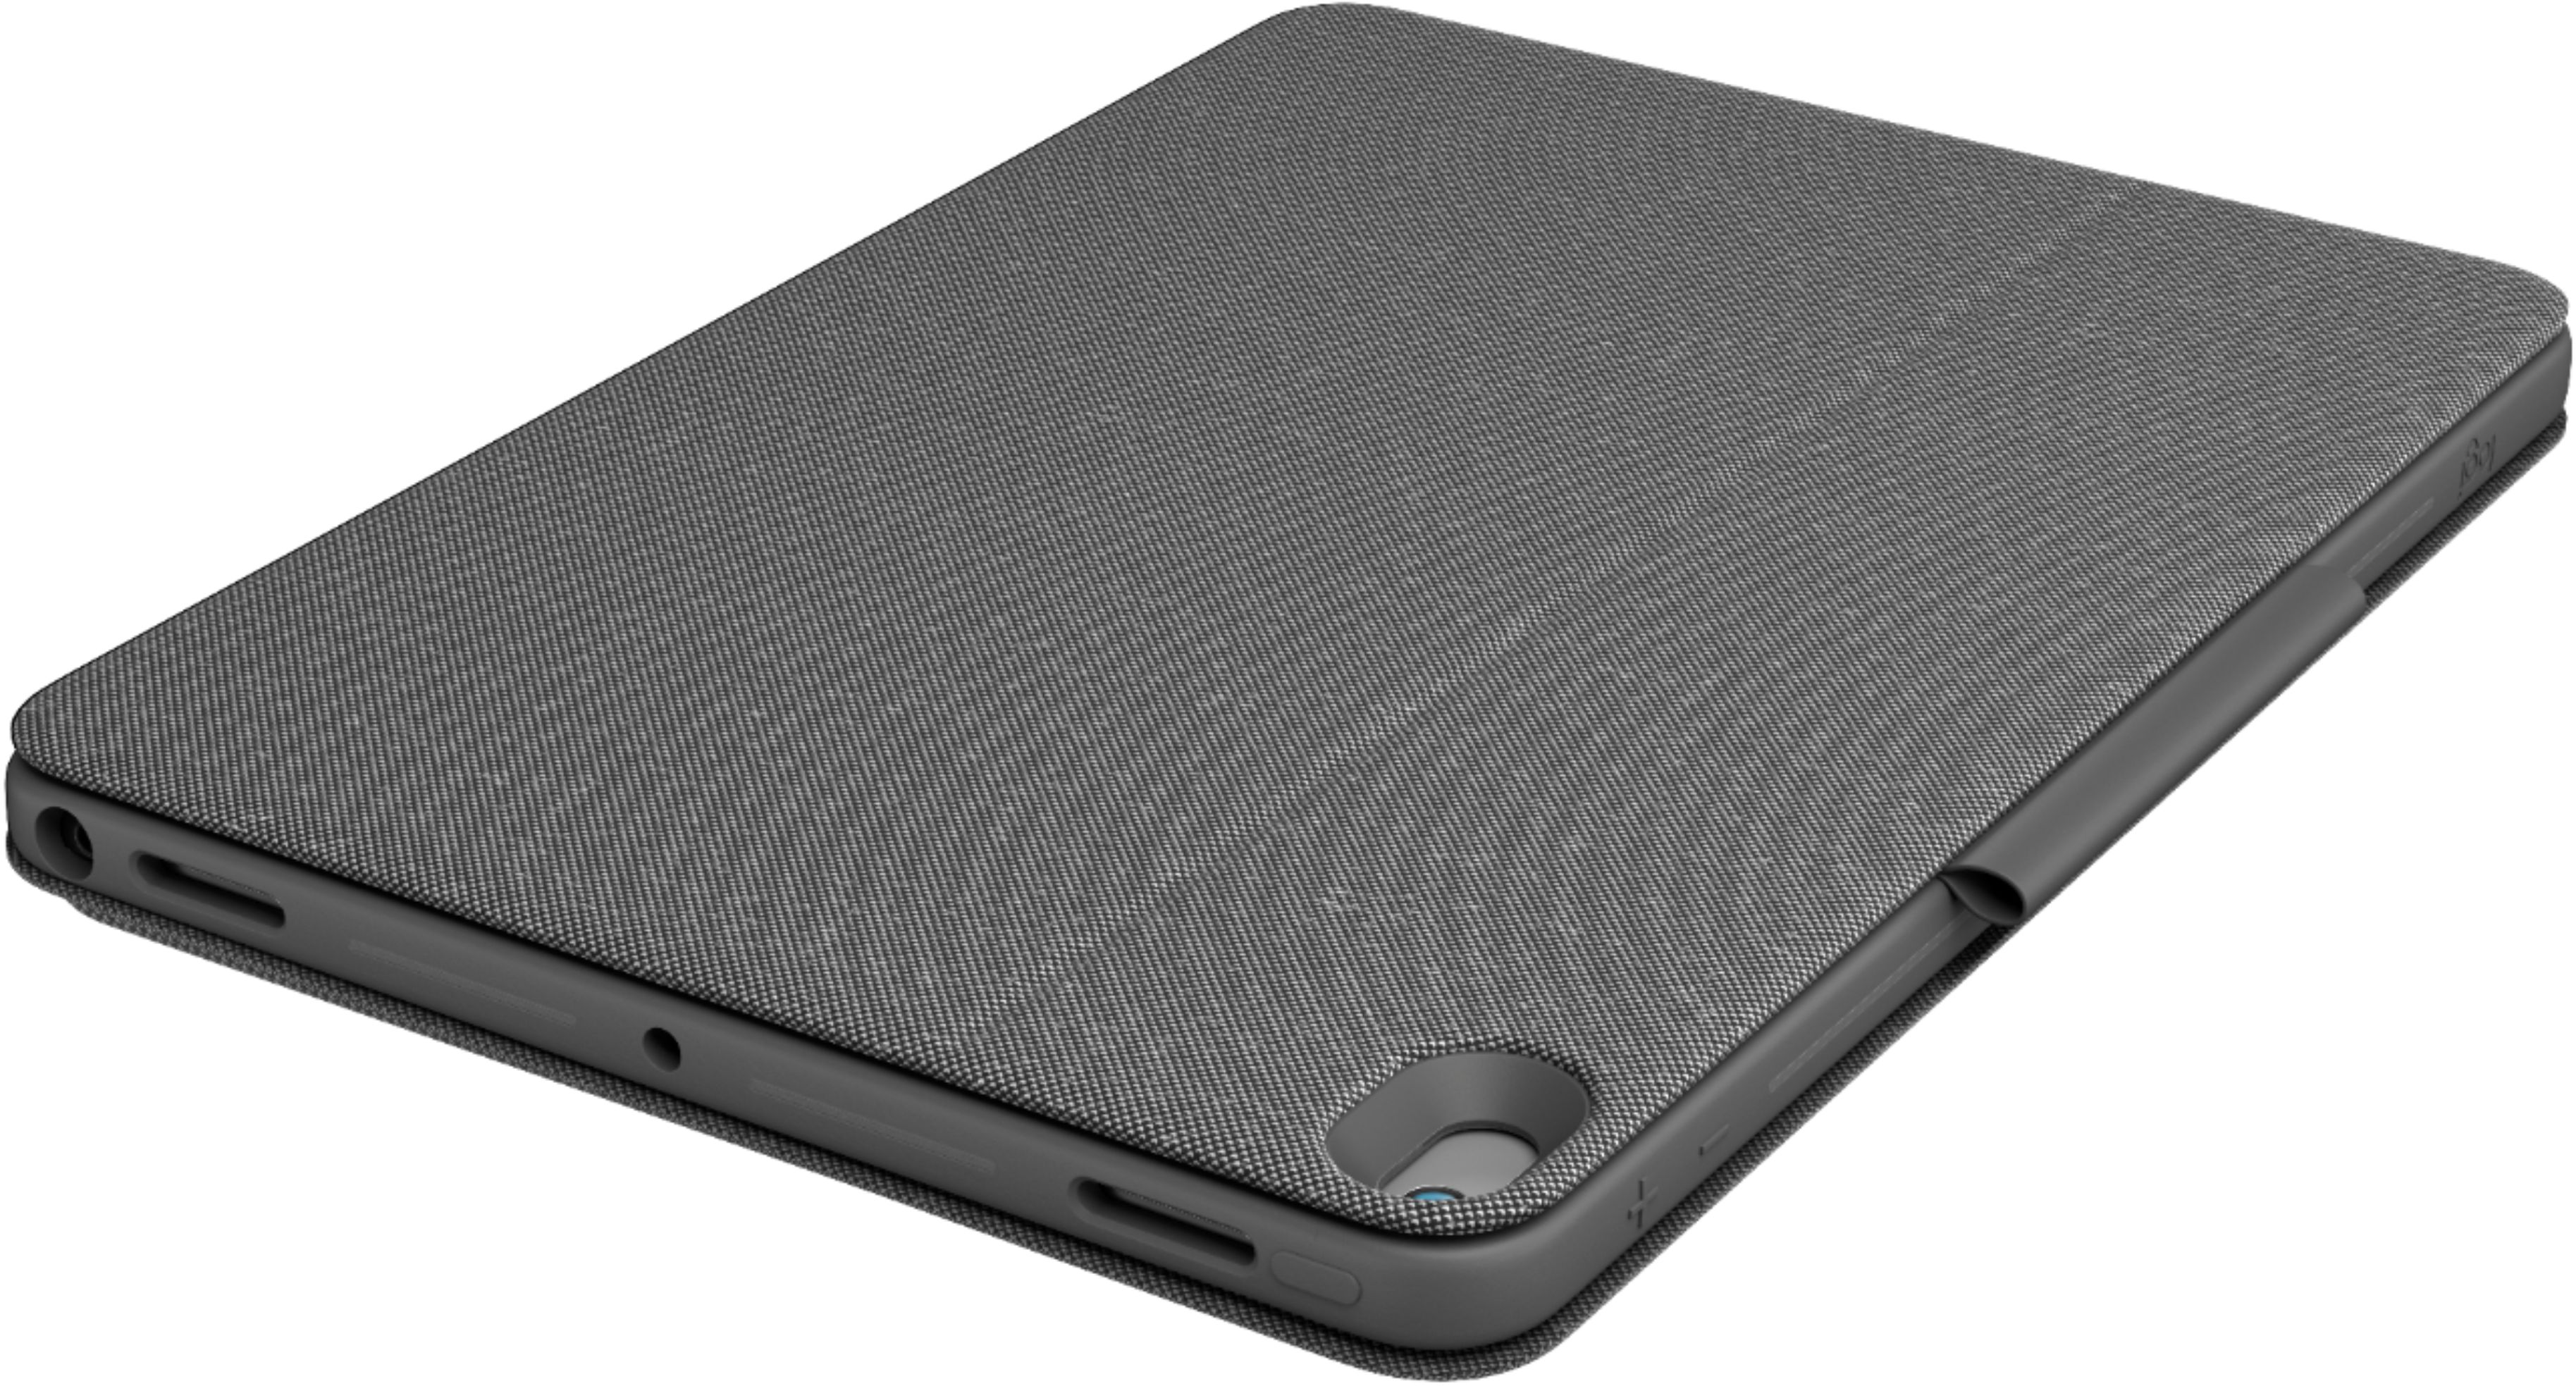 Logitech Combo Touch - iPad Air (3ème gen) / iPad Pro 10.5